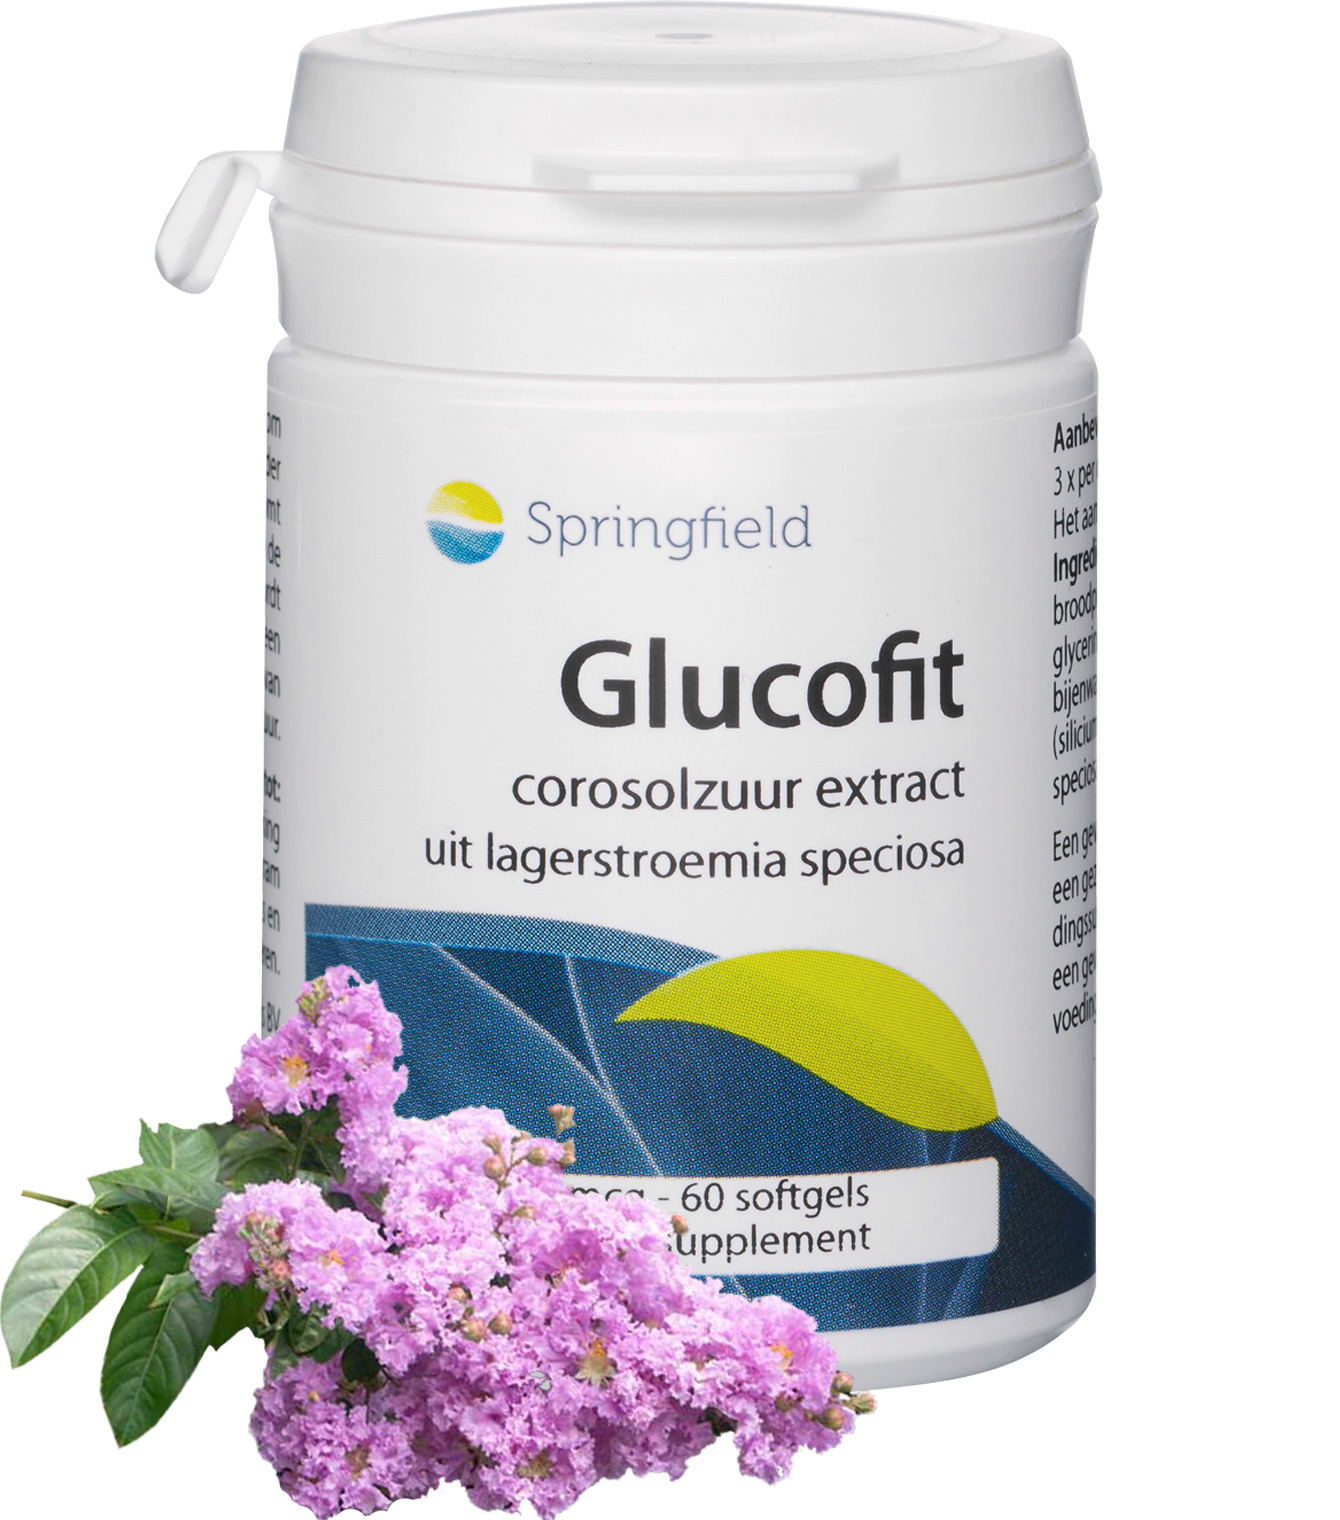 Glucofit Lagerstroemia speciosa-extract met corosolzuur